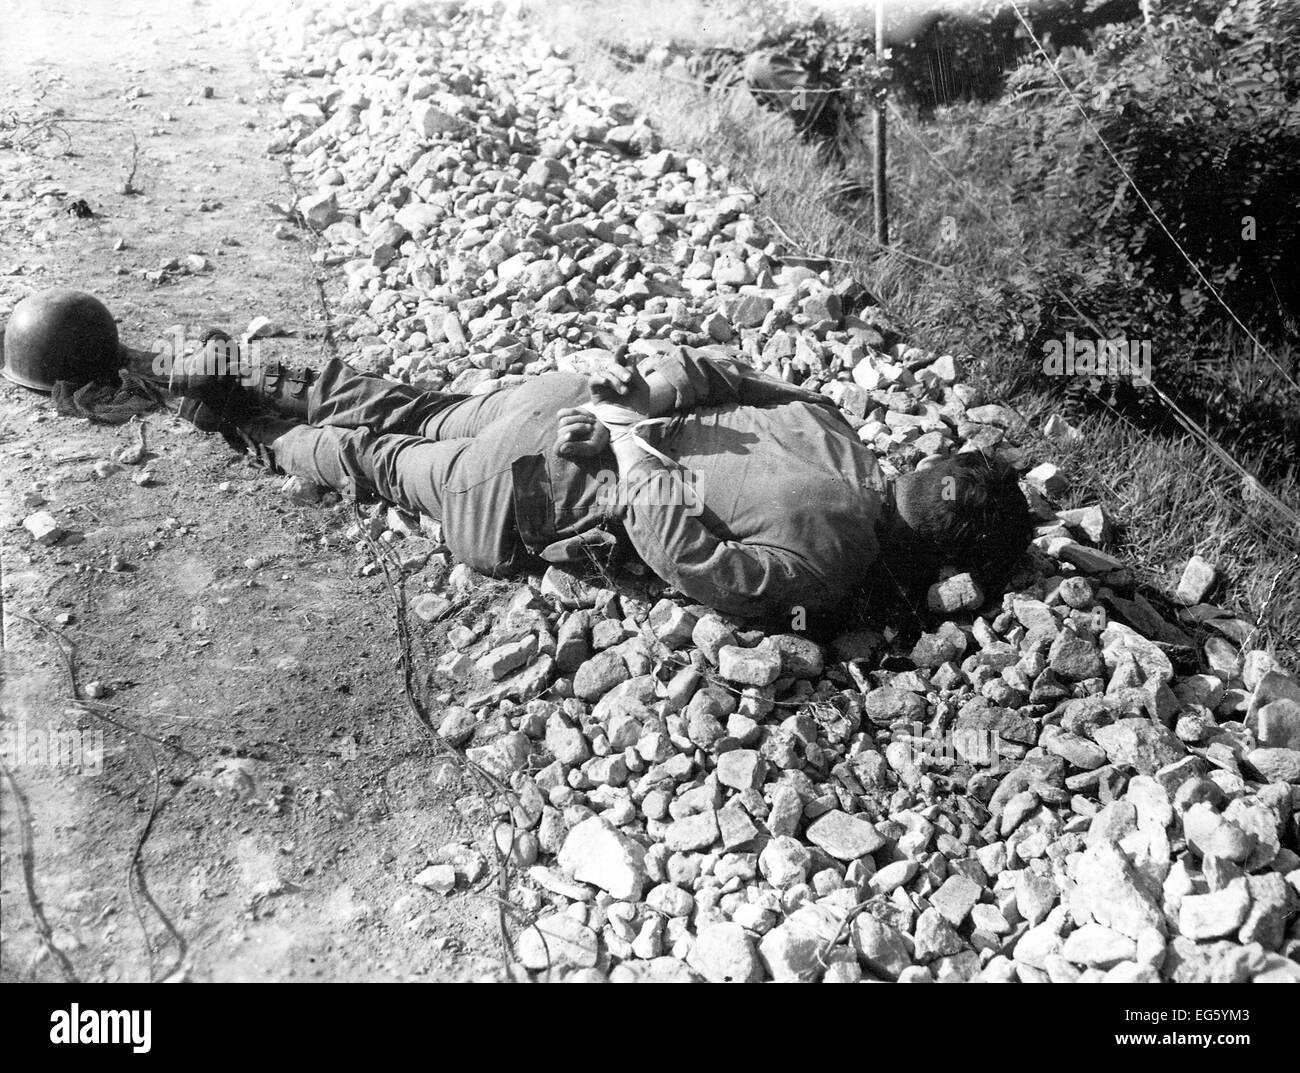 Guerre de Corée (1950-1953), exécuté avec un soldat sud-coréen, les mains liées derrière son dos Banque D'Images